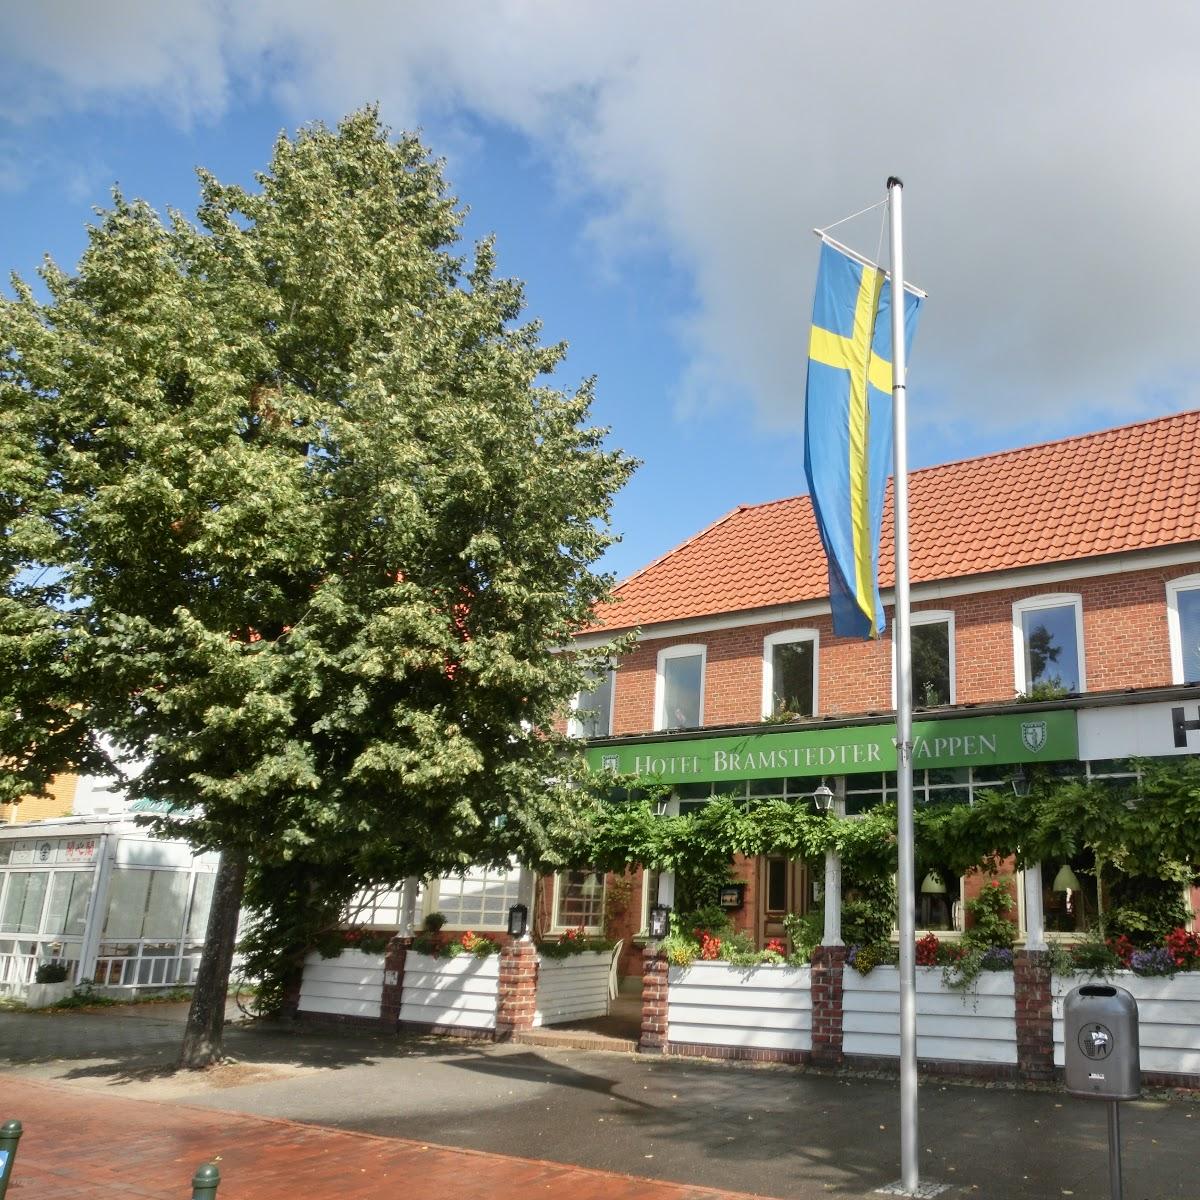 Restaurant "Hotel Bramstedter Wappen" in Bad Bramstedt